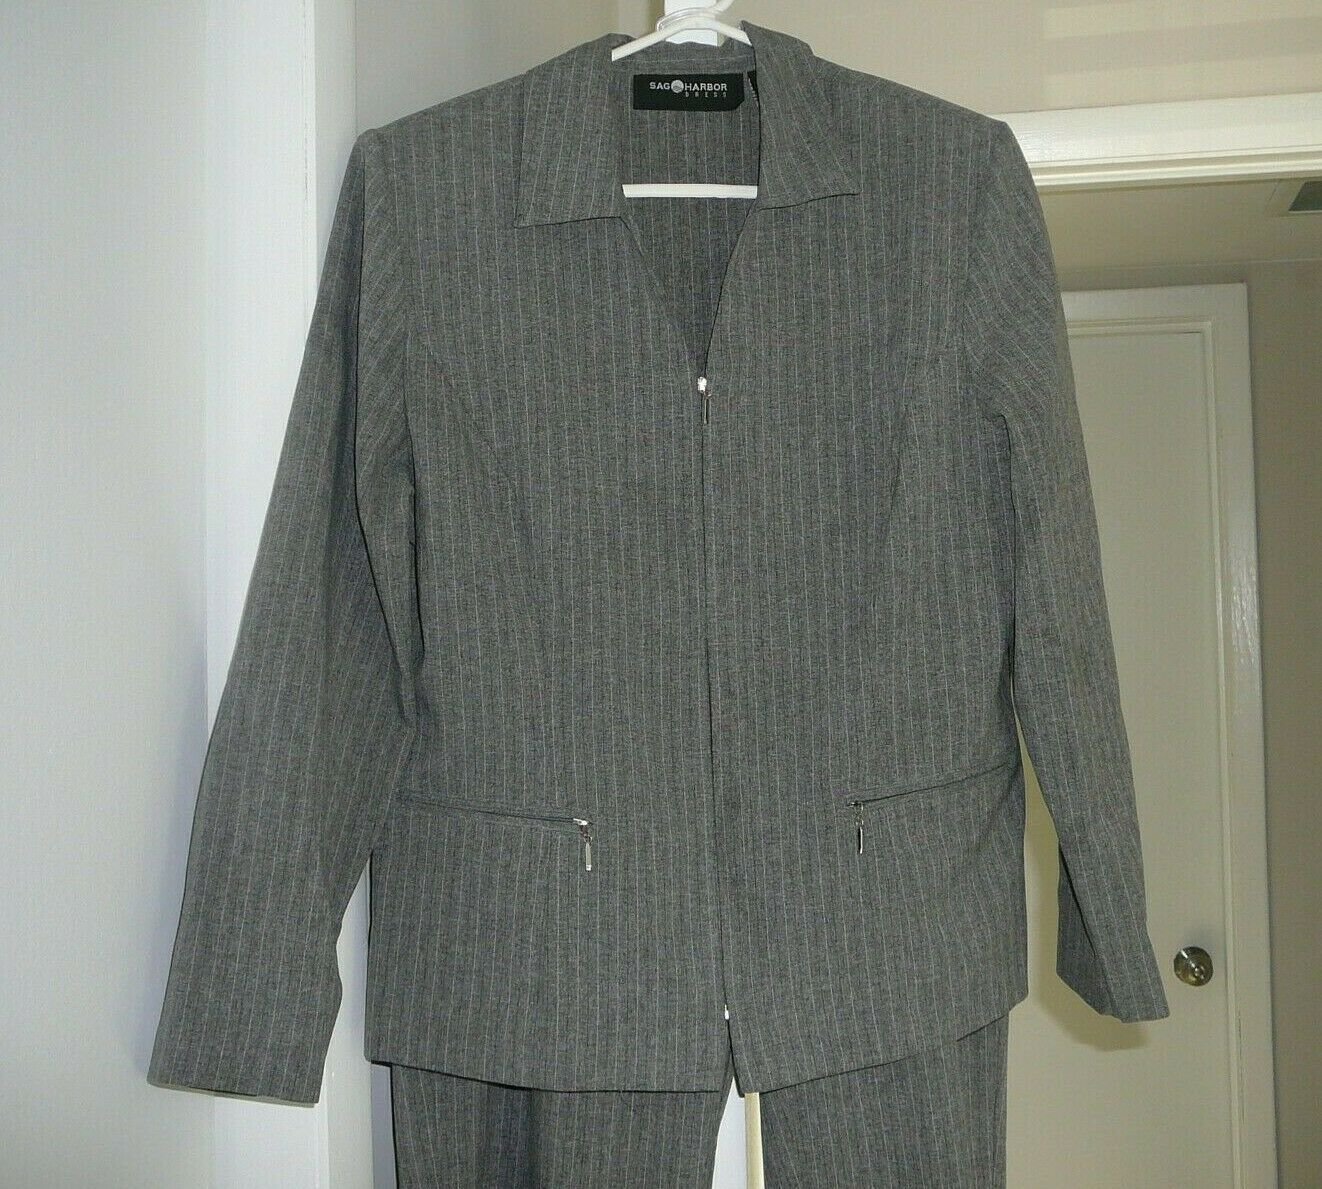 Womans SAG HARBOR Gray Pin Stripe 2Pc Suit Size 12 Jacket and Pants Suit